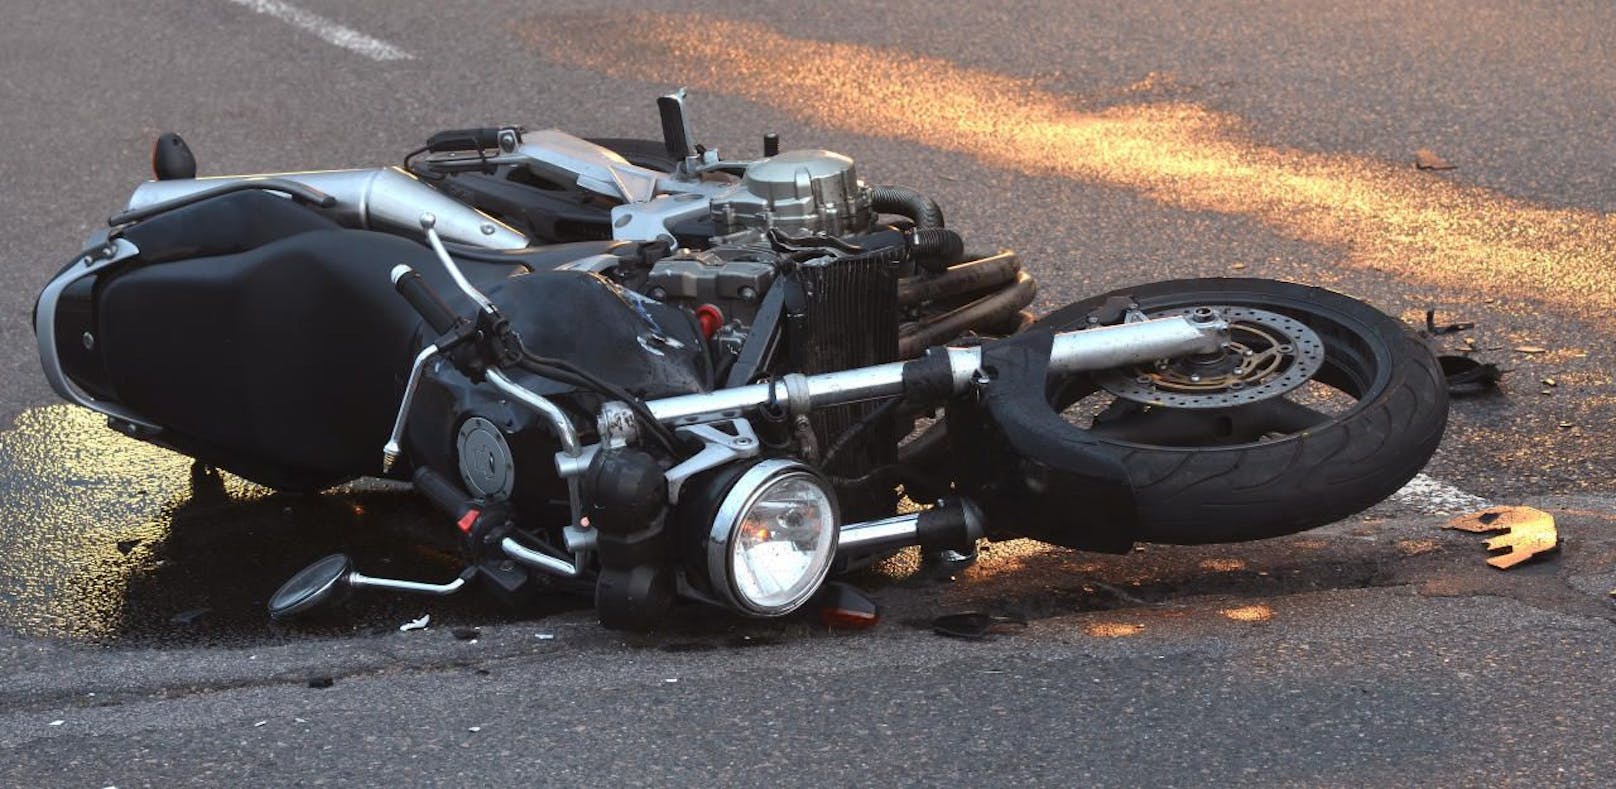 Unfall: Biker prallte bei Crash gegen Felswand